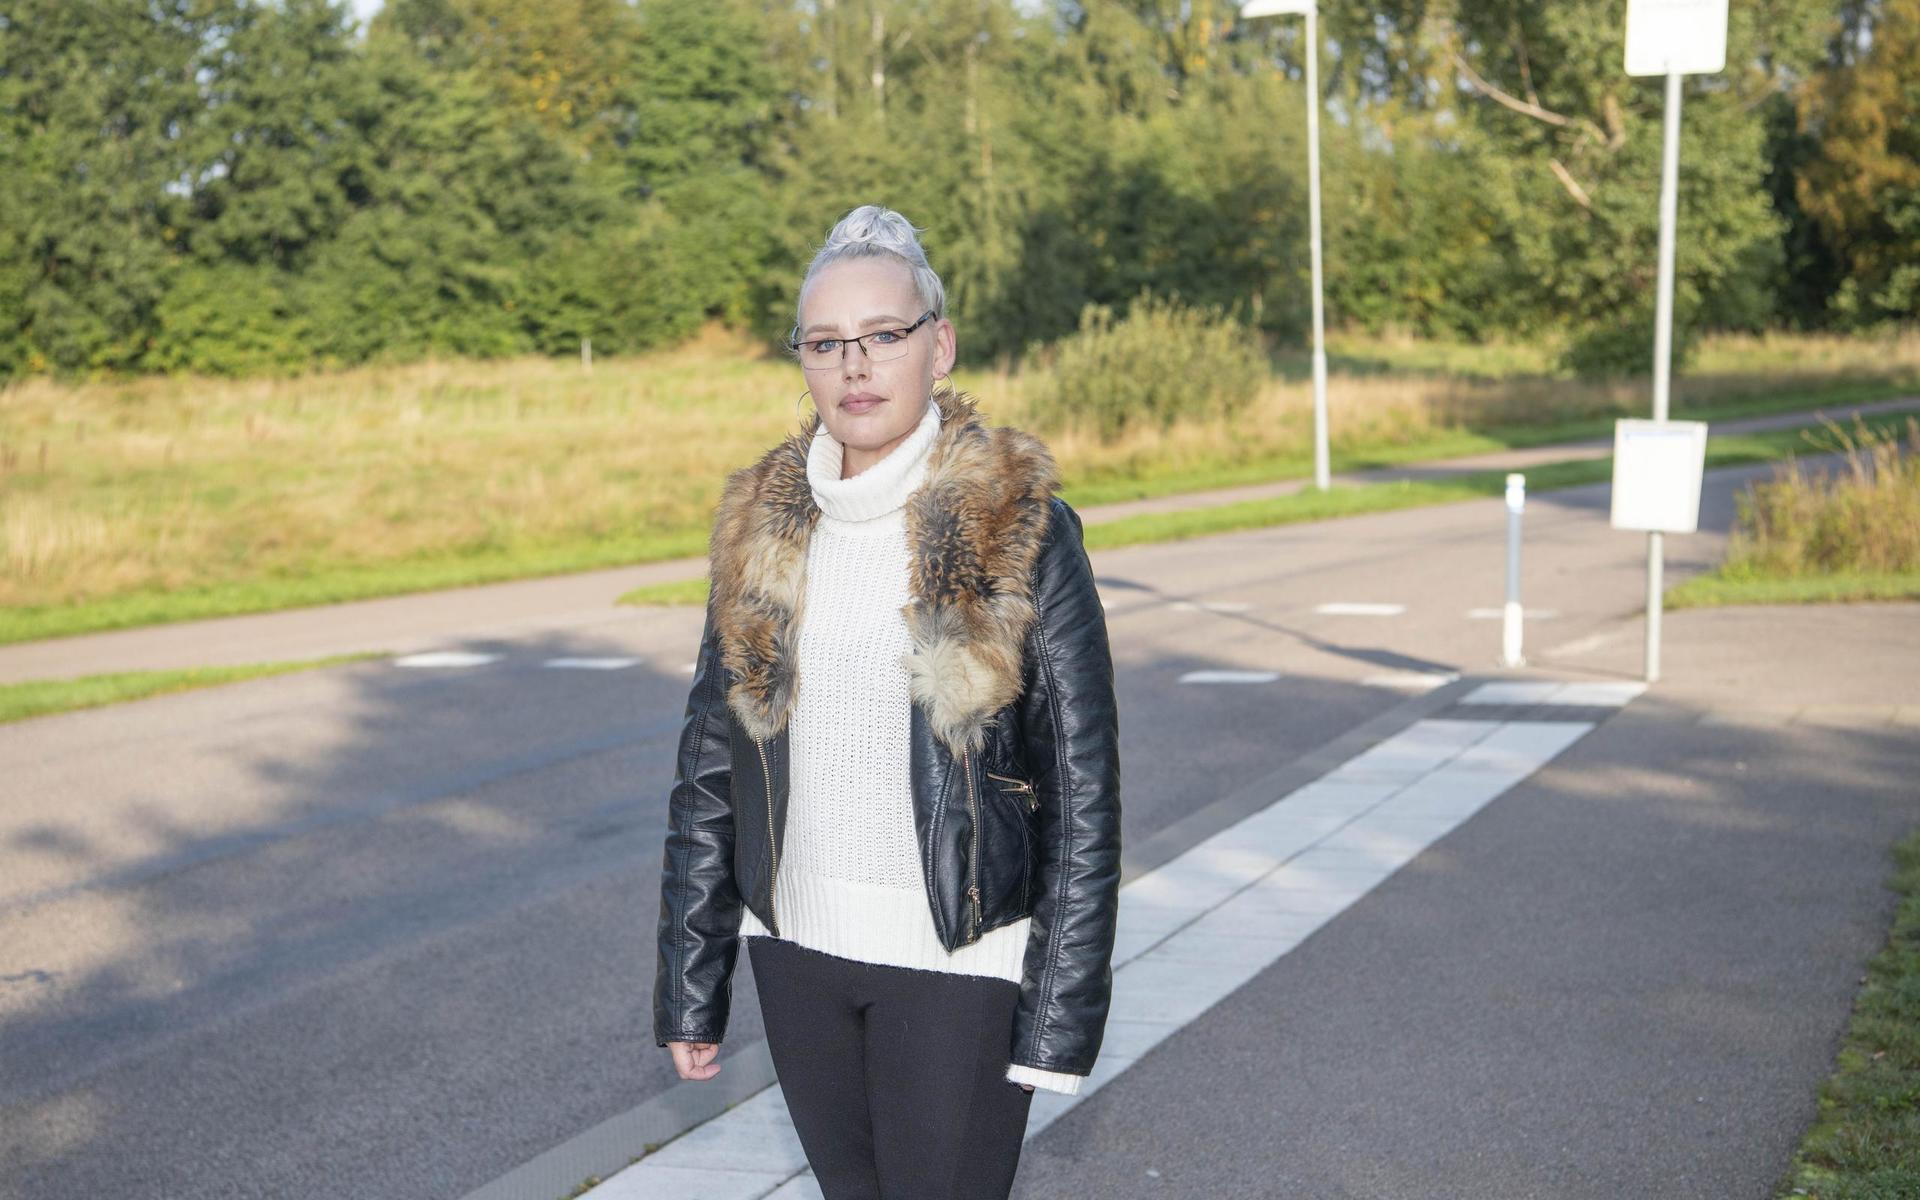 Camilla Bollesparr reagerade starkt på händelsen och hörde av sig direkt till Hallandstrafiken och gjorde en polisanmälan om olaga hot.